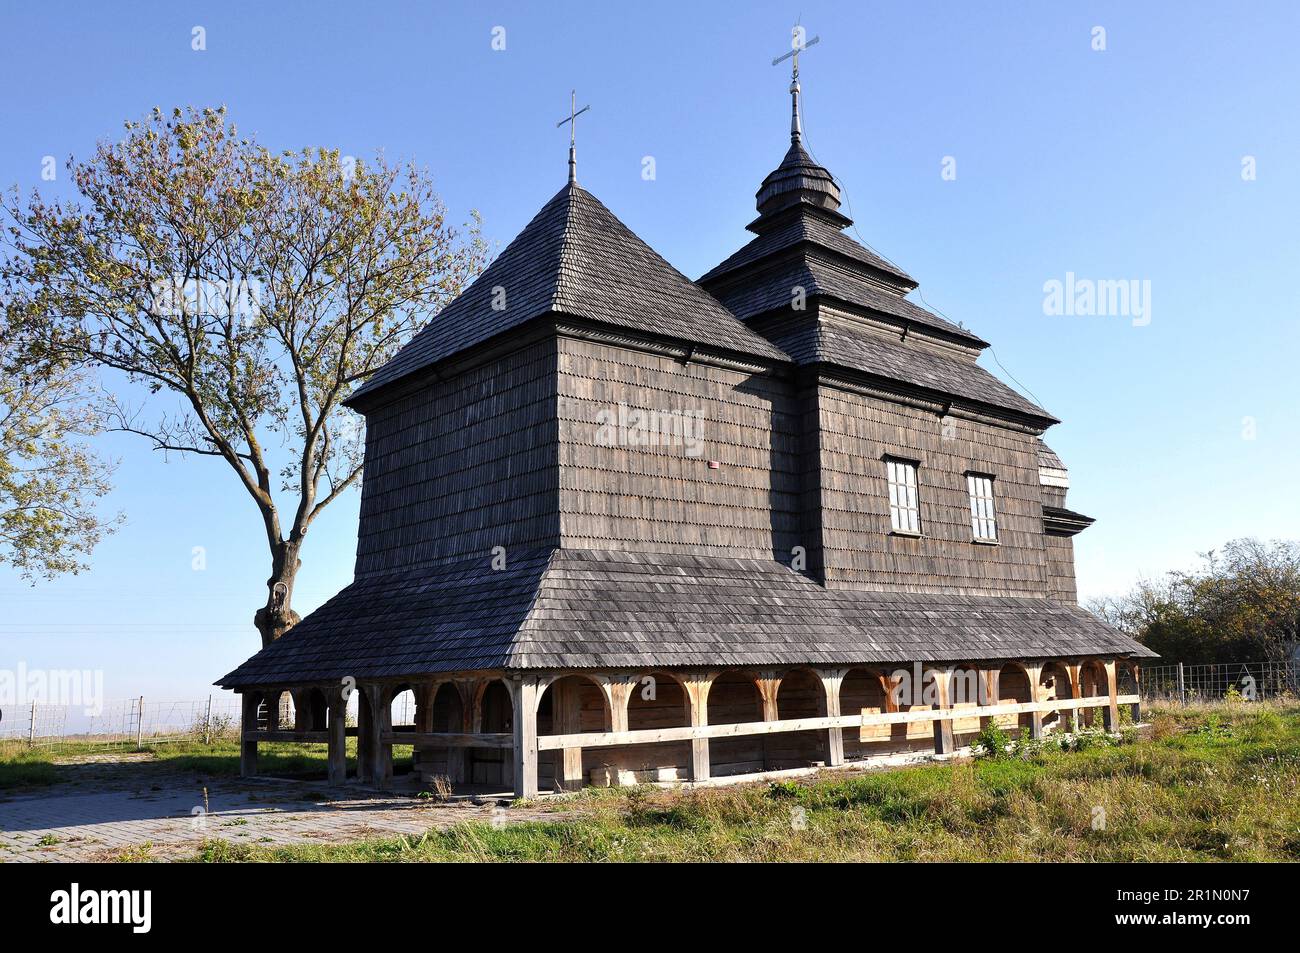 Église en bois de Skoryky RB.jpg Ceci est une photo d'un monument en Ukraine, numéro- 61-246-0002 - Rbrechko Banque D'Images